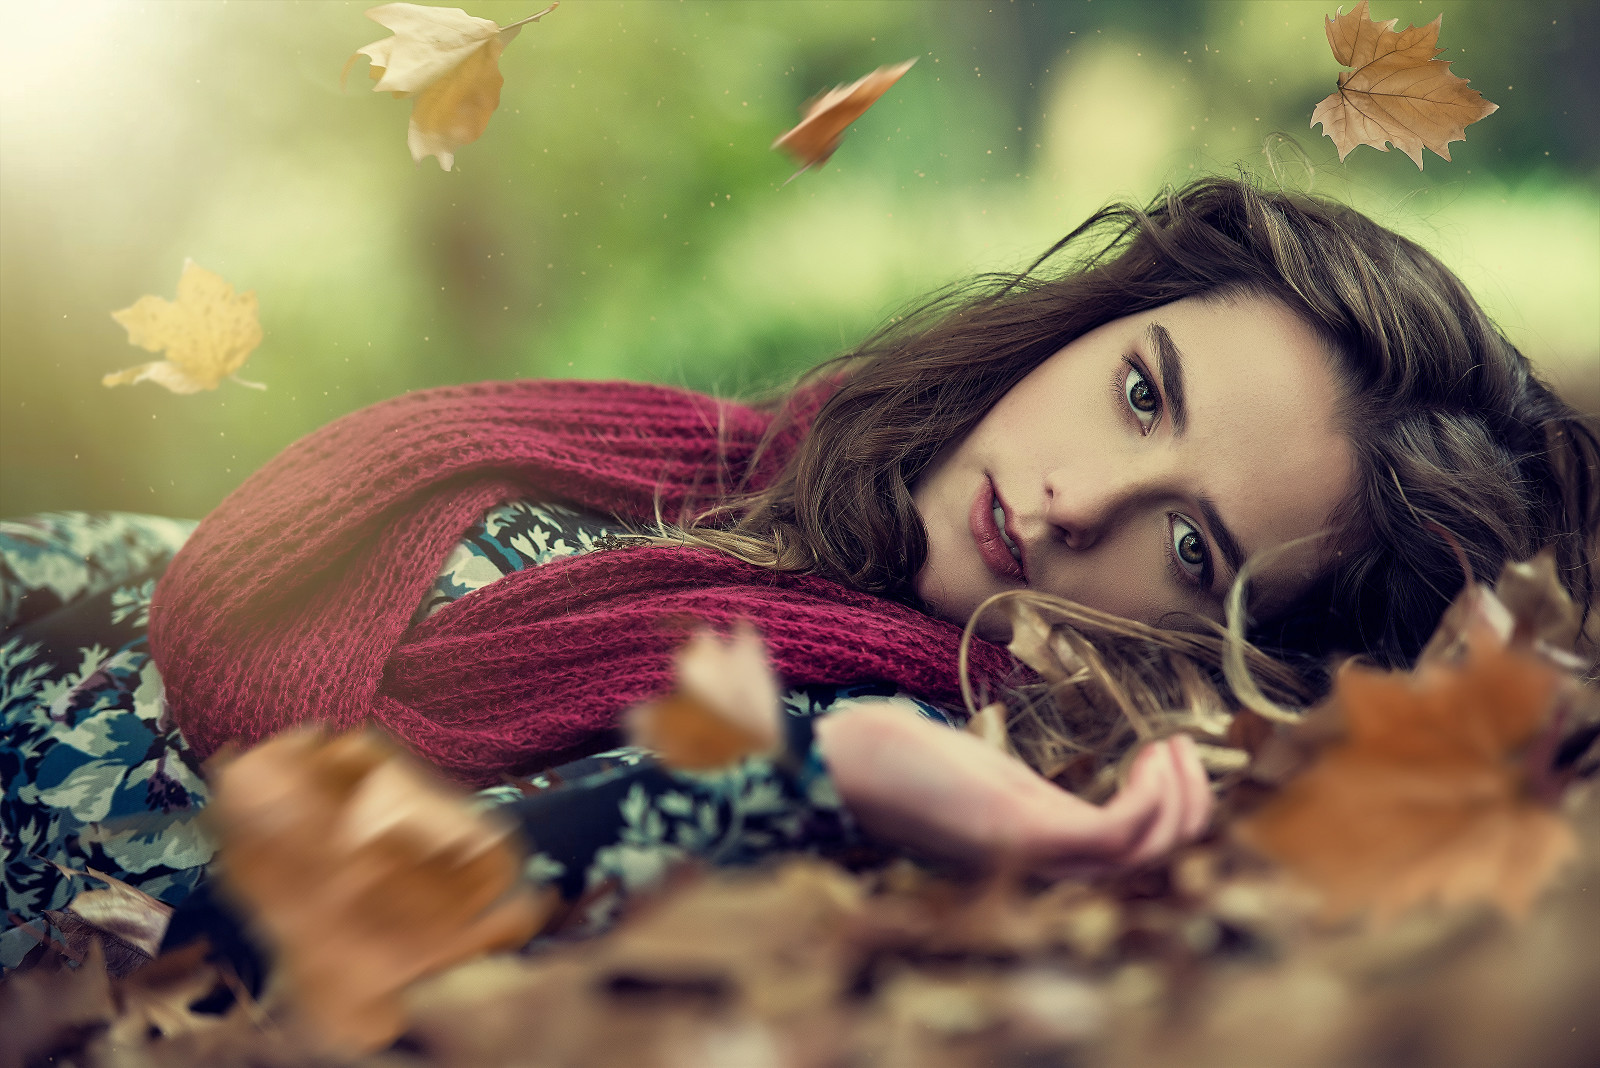 가을, 얼굴, 떨어지는 잎들, 스카프, 눈, 머리